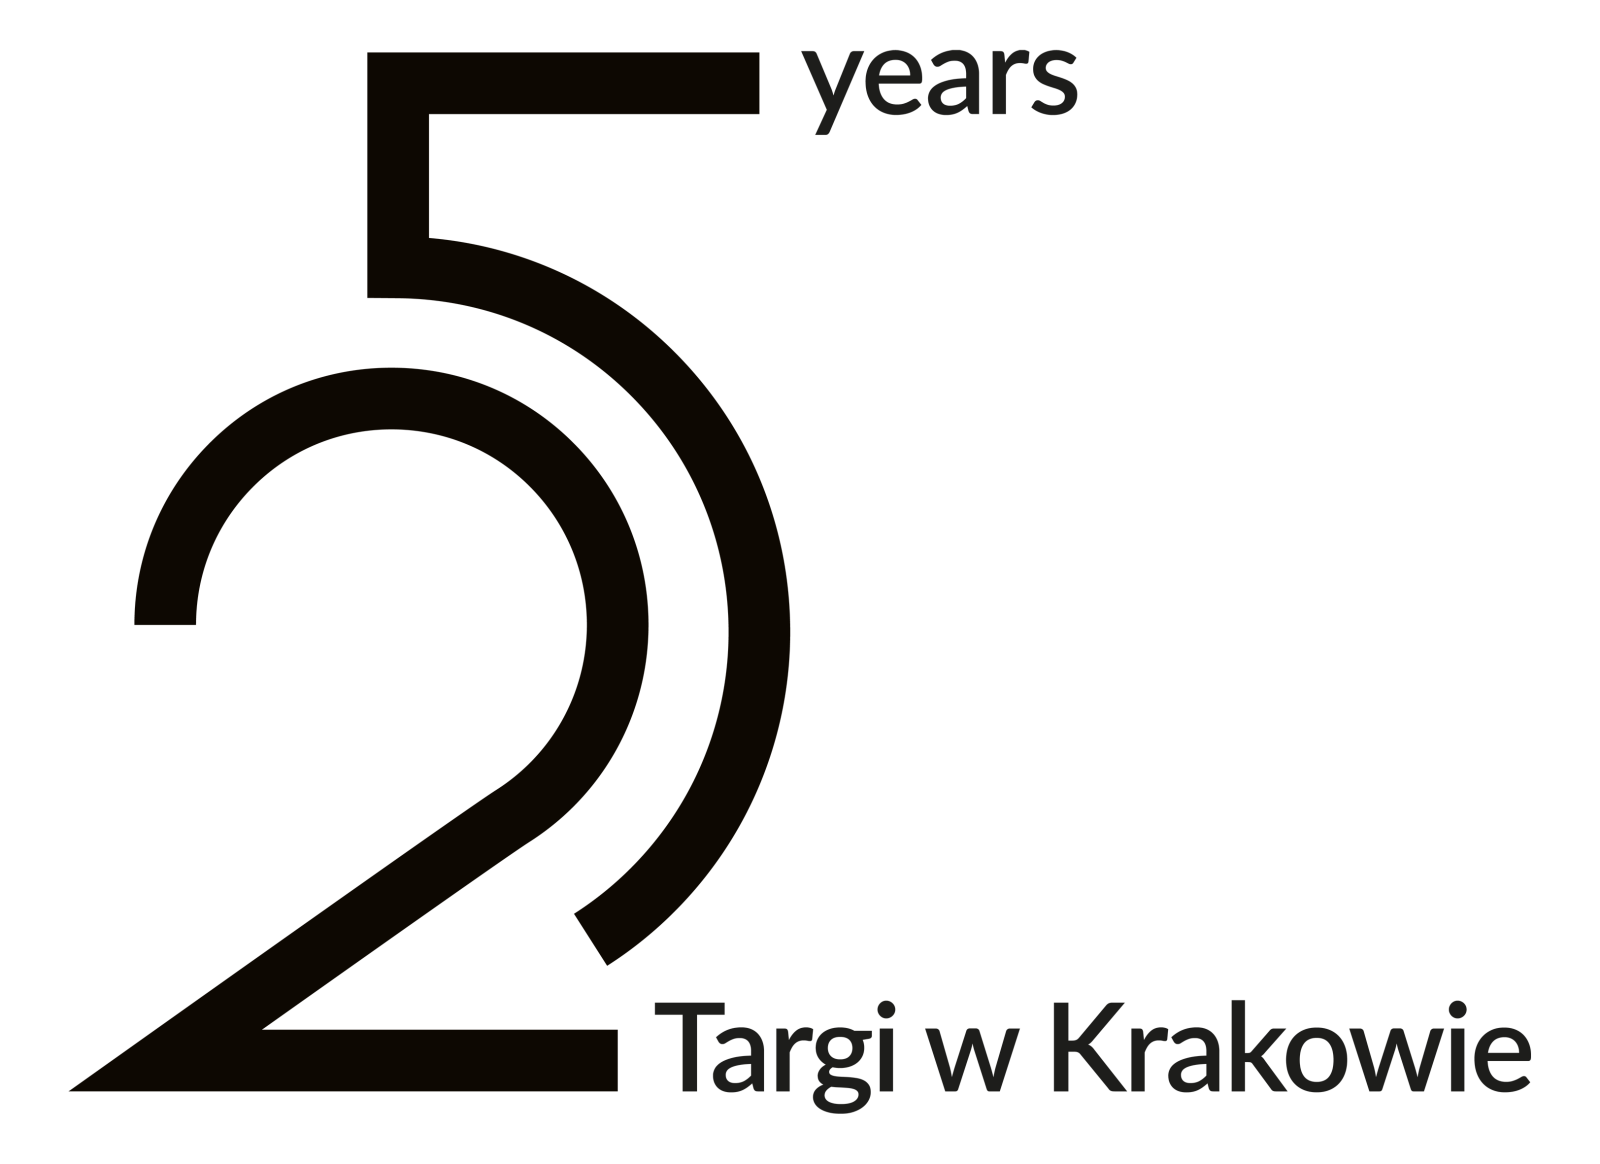 25-years-Targi-w-Krakowie.png [132.35 KB]